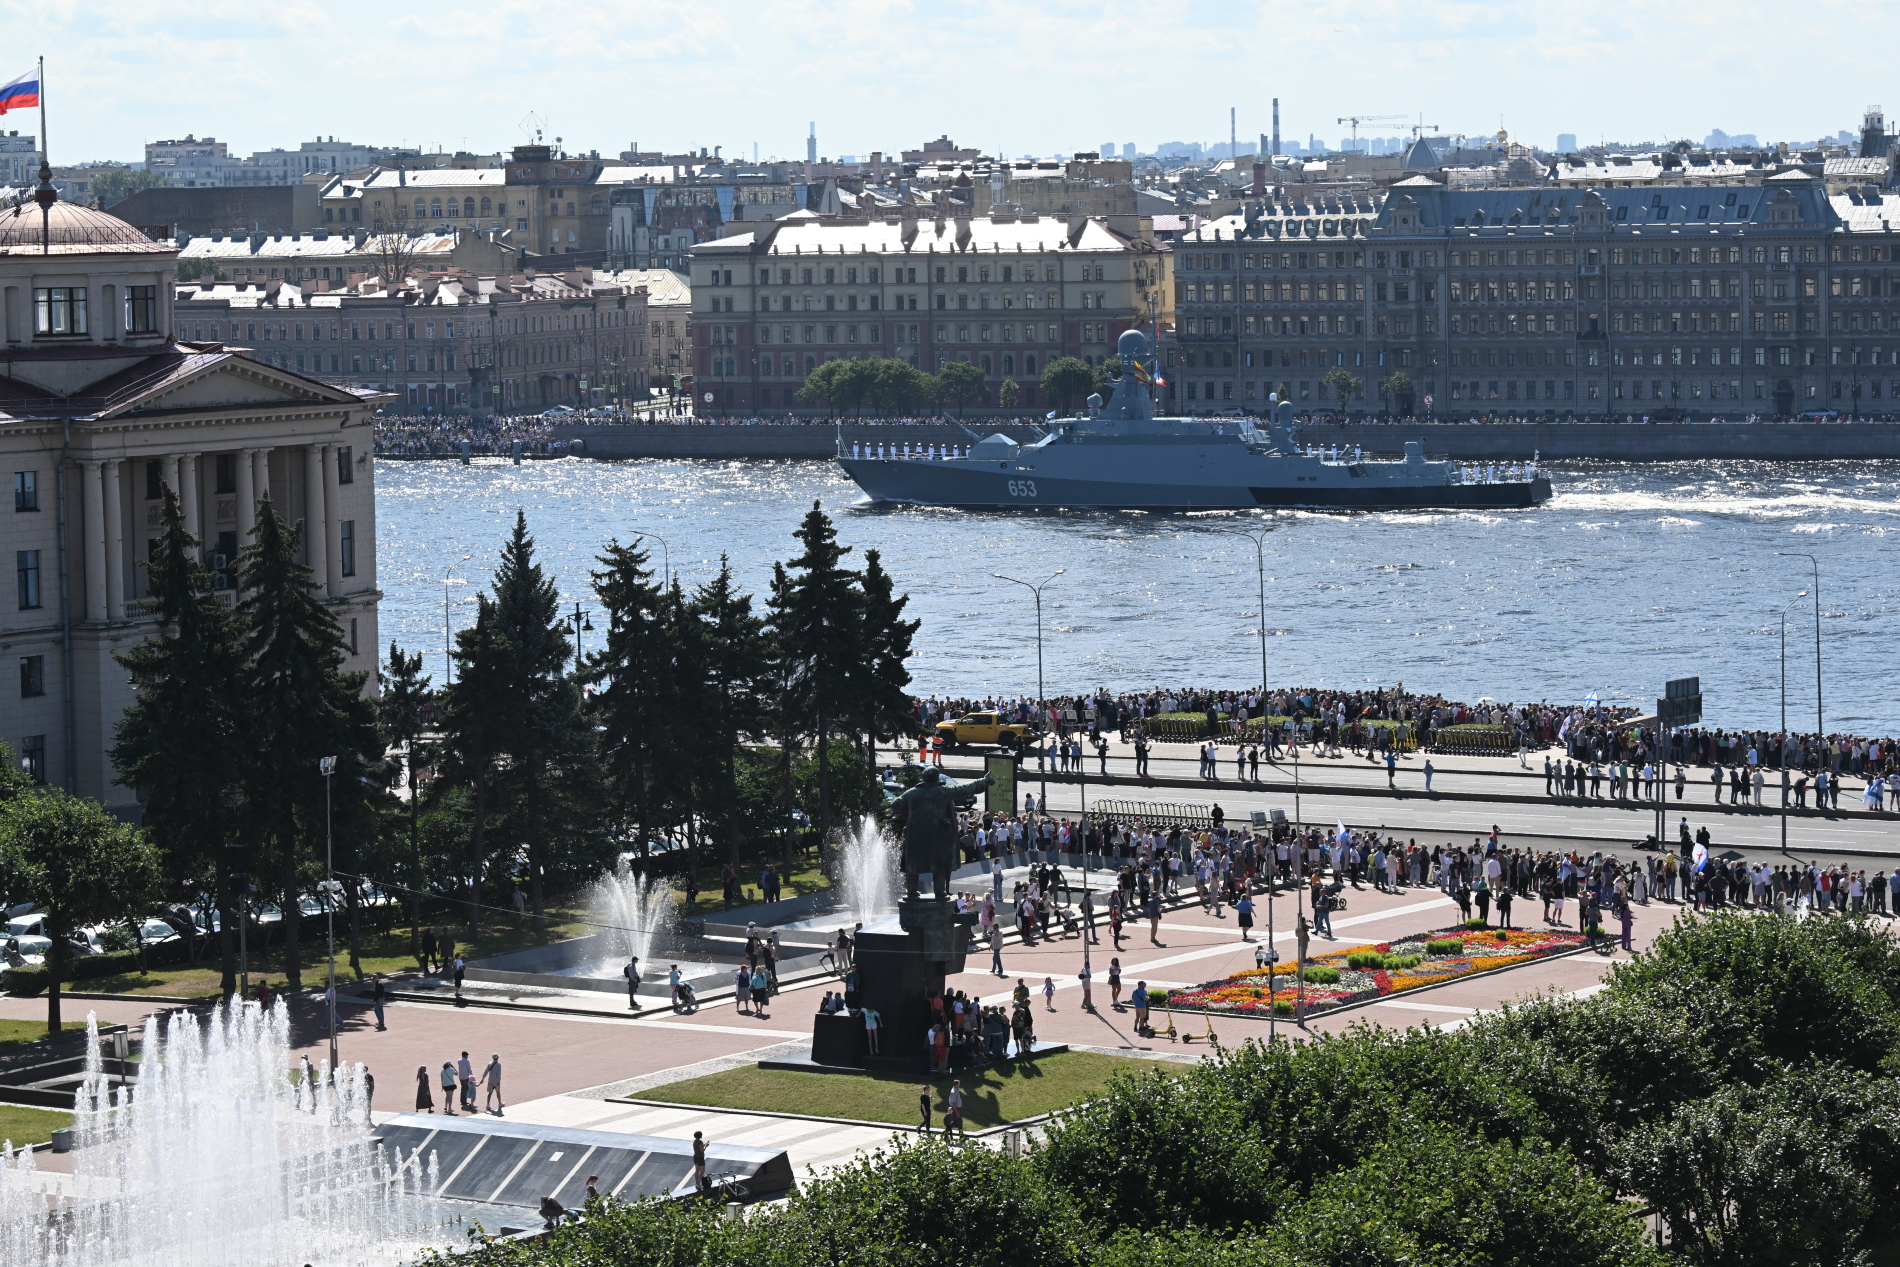 Главный военно-морской парад в Санкт-Петербурге смотрите на "БелРос" 28 июля в 11:00